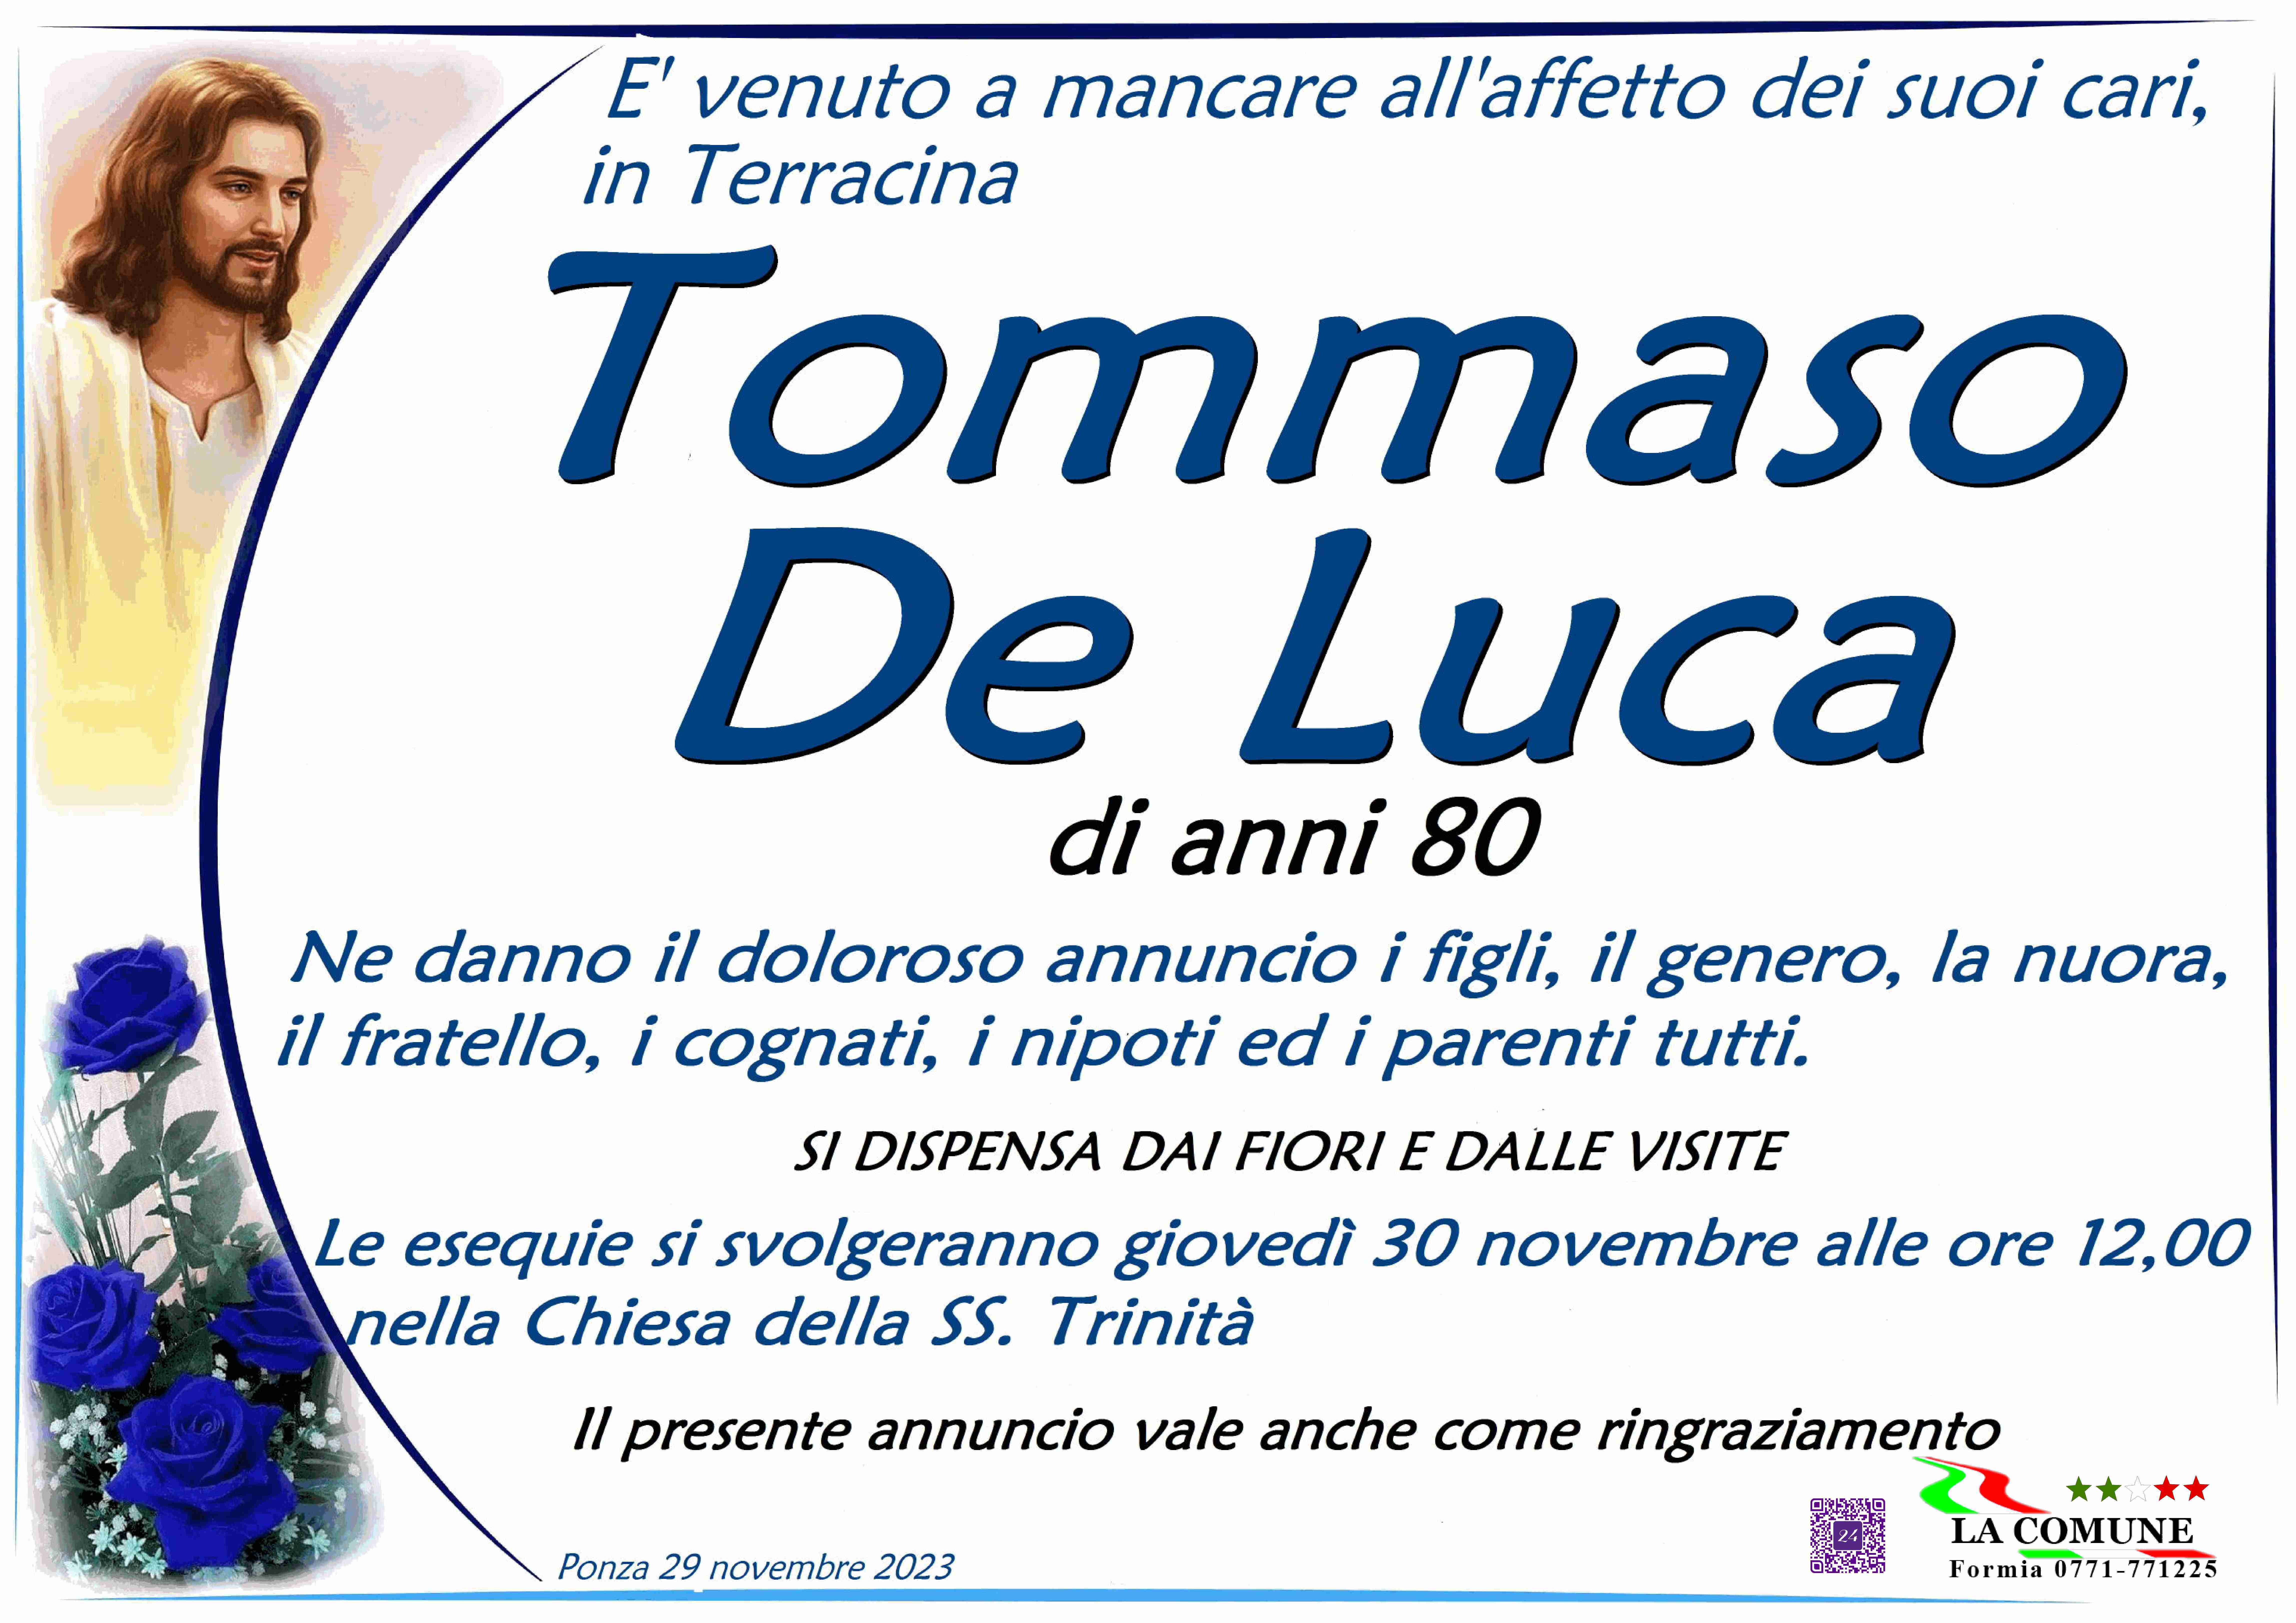 Tommaso De Luca